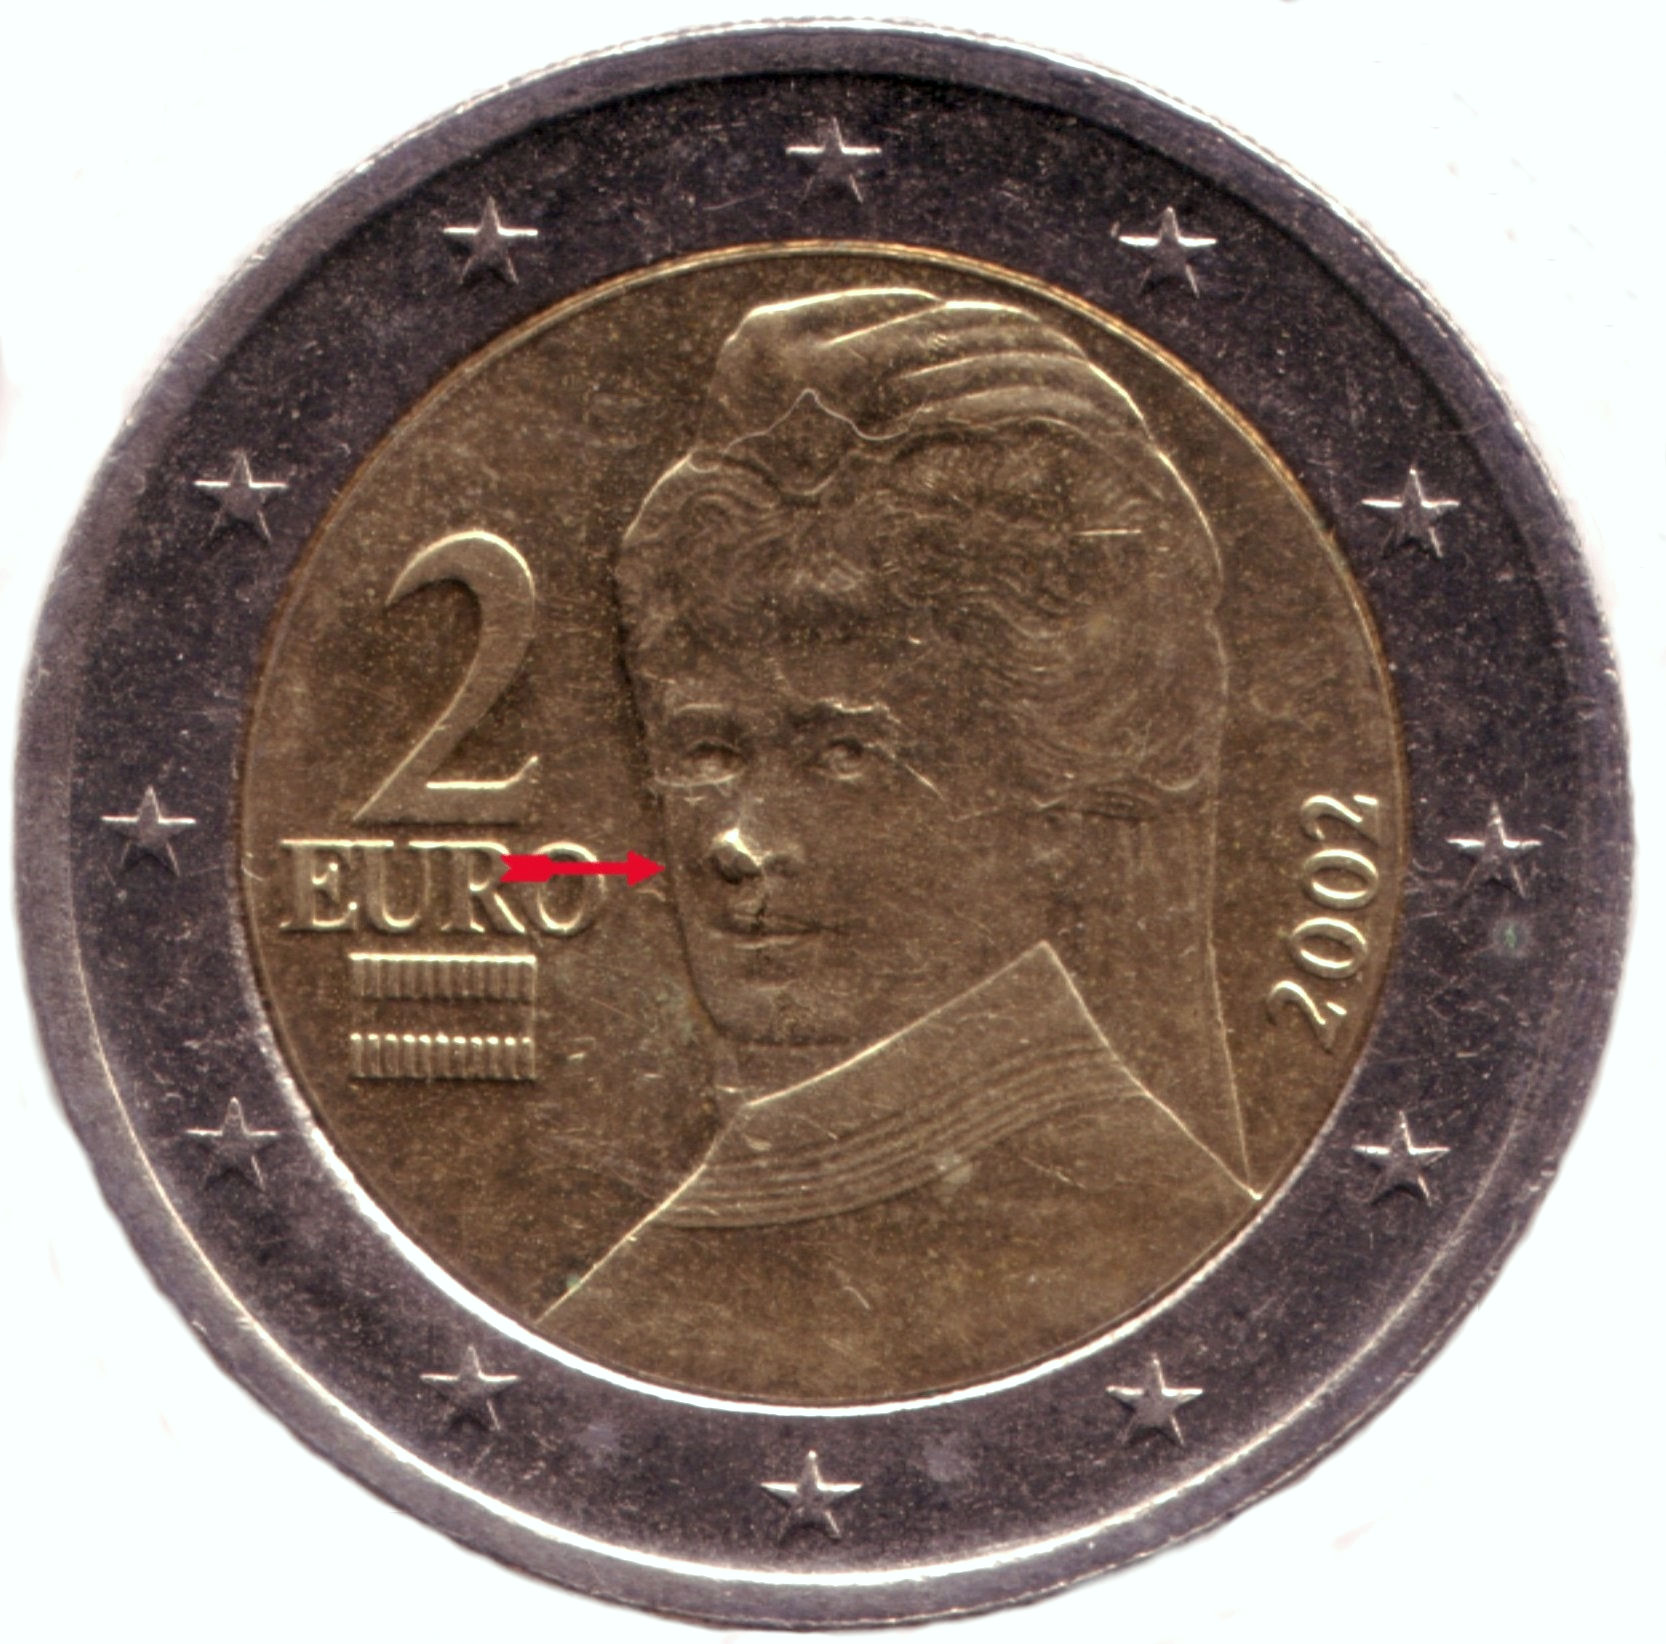 2-Euro aus Österreich mit der Fehlprägung aus Beispiel 3. Foto: Angela Graff